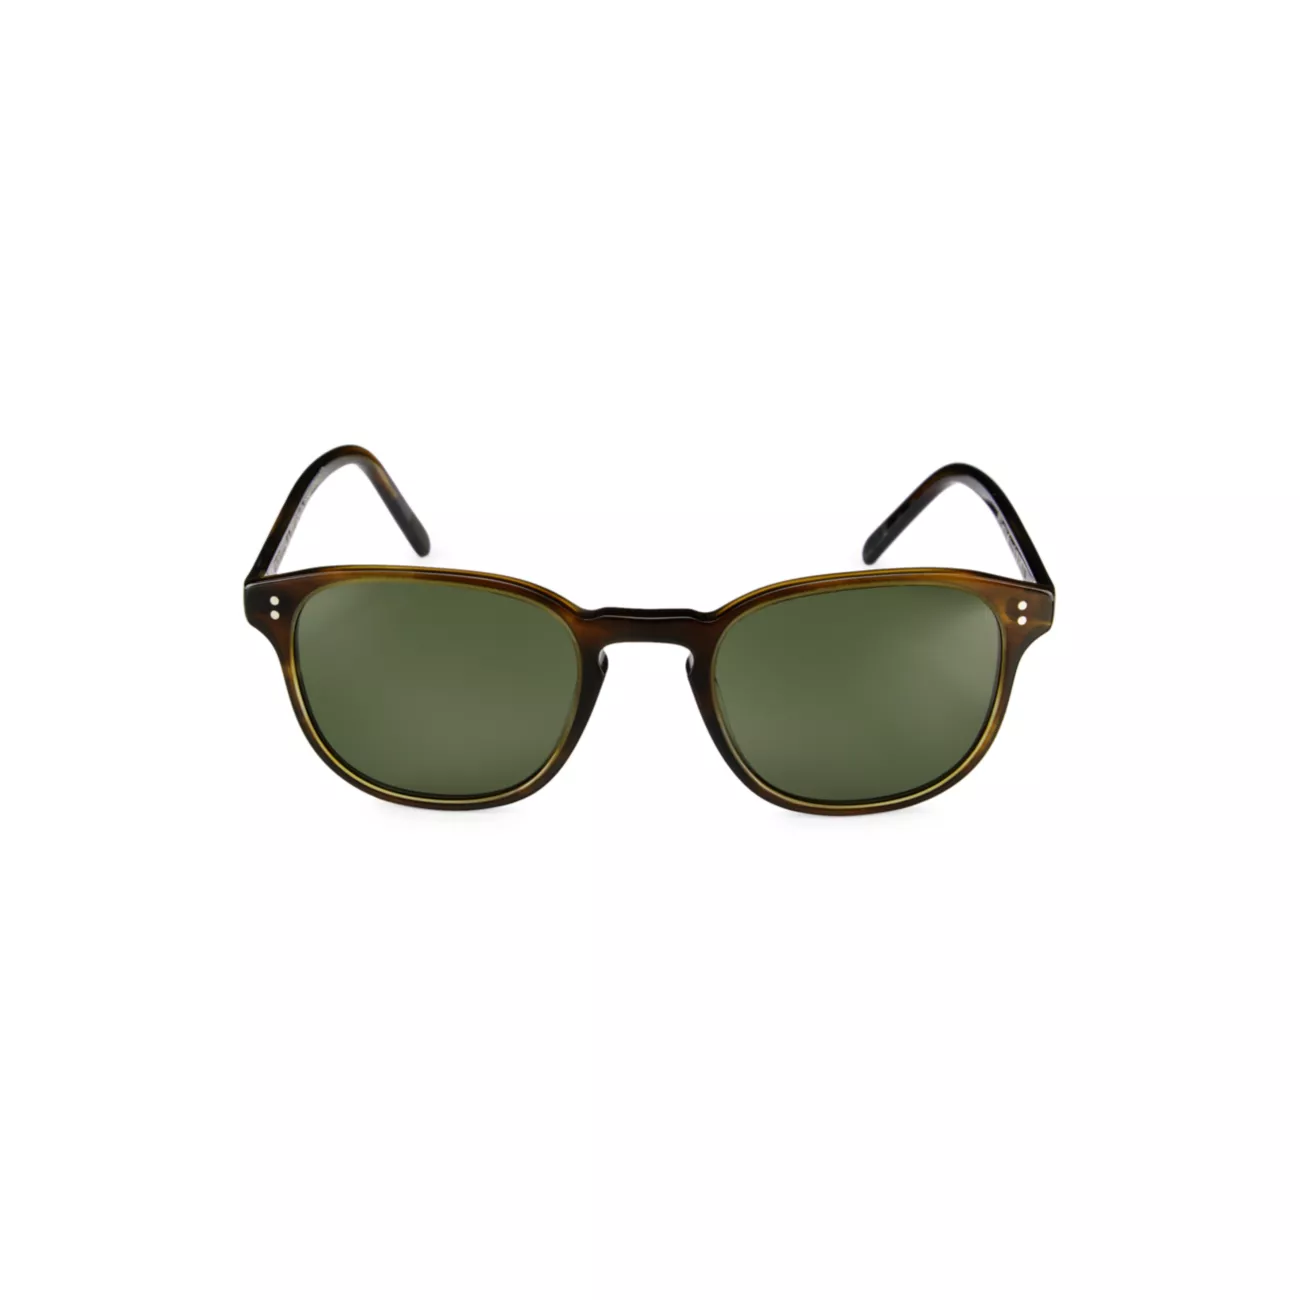 Круглые солнцезащитные очки Fairmont 49 мм Oliver Peoples